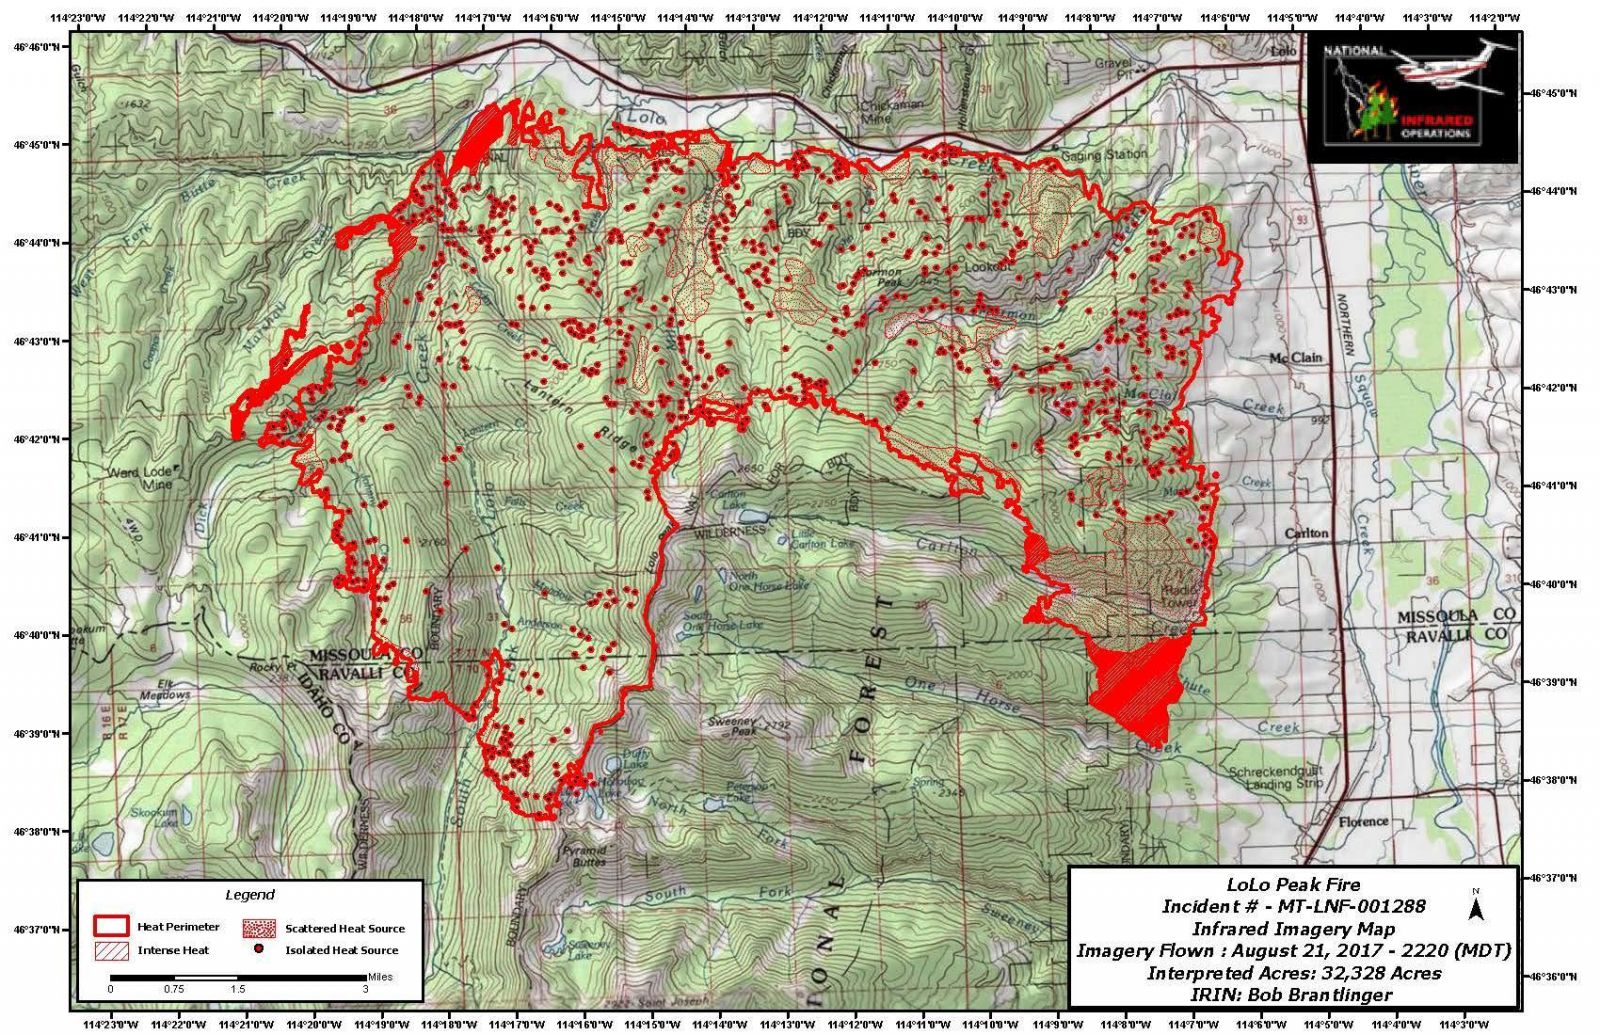 Lolo Peak fire map, August 21, 2017